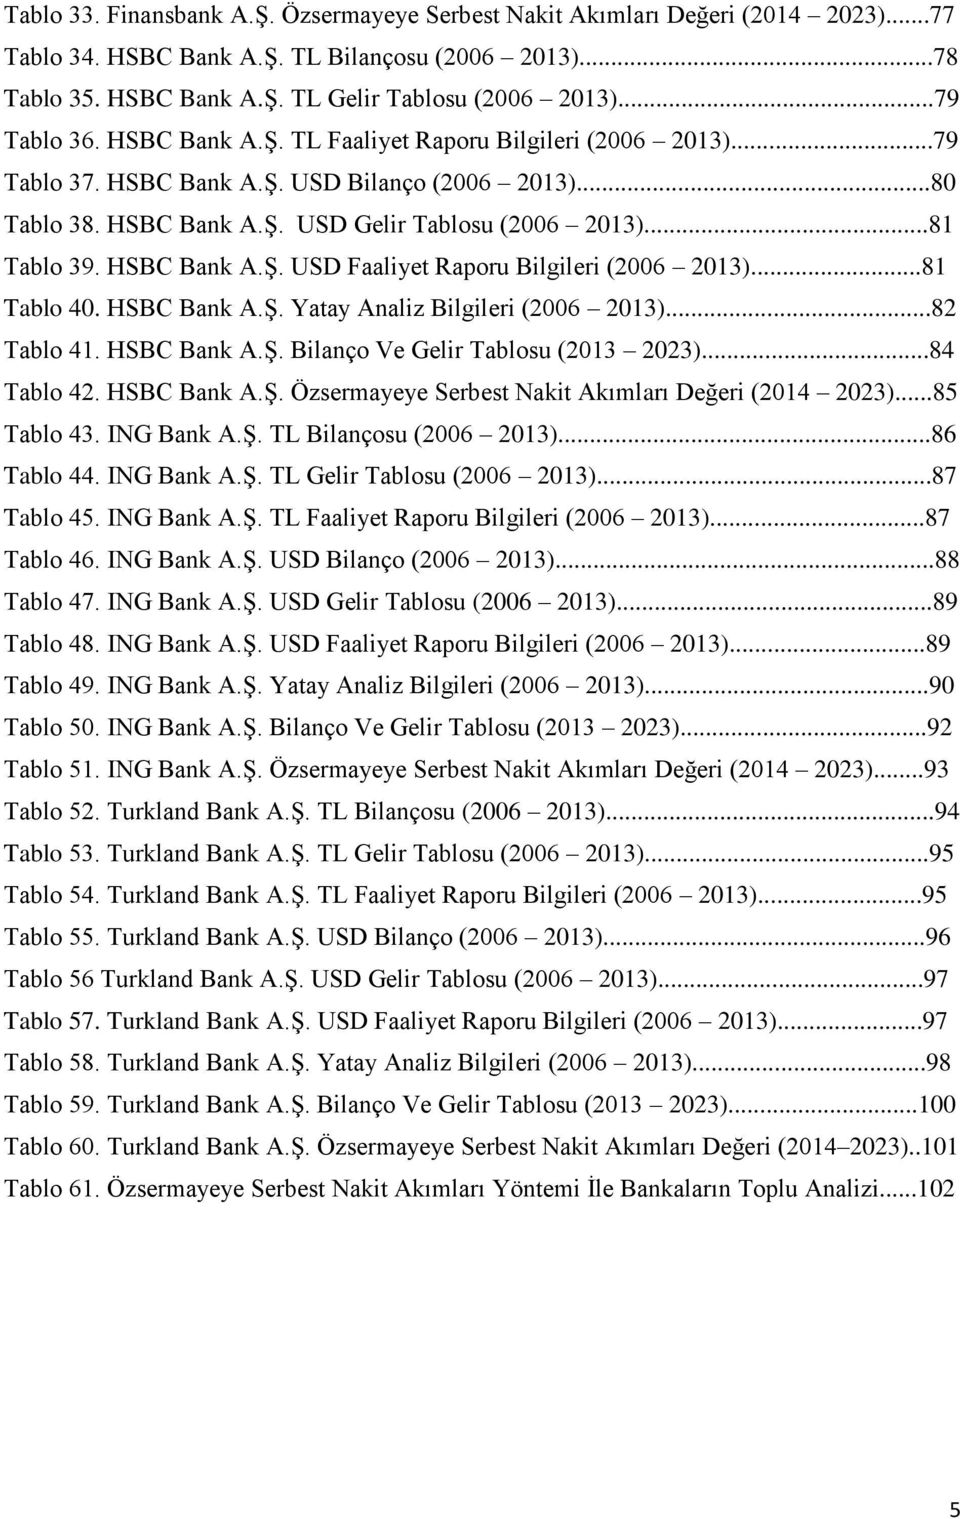 HSBC Bank A.Ş. USD Faaliyet Raporu Bilgileri (2006 2013)...81 Tablo 40. HSBC Bank A.Ş. Yatay Analiz Bilgileri (2006 2013)...82 Tablo 41. HSBC Bank A.Ş. Bilanço Ve Gelir Tablosu (2013 2023).